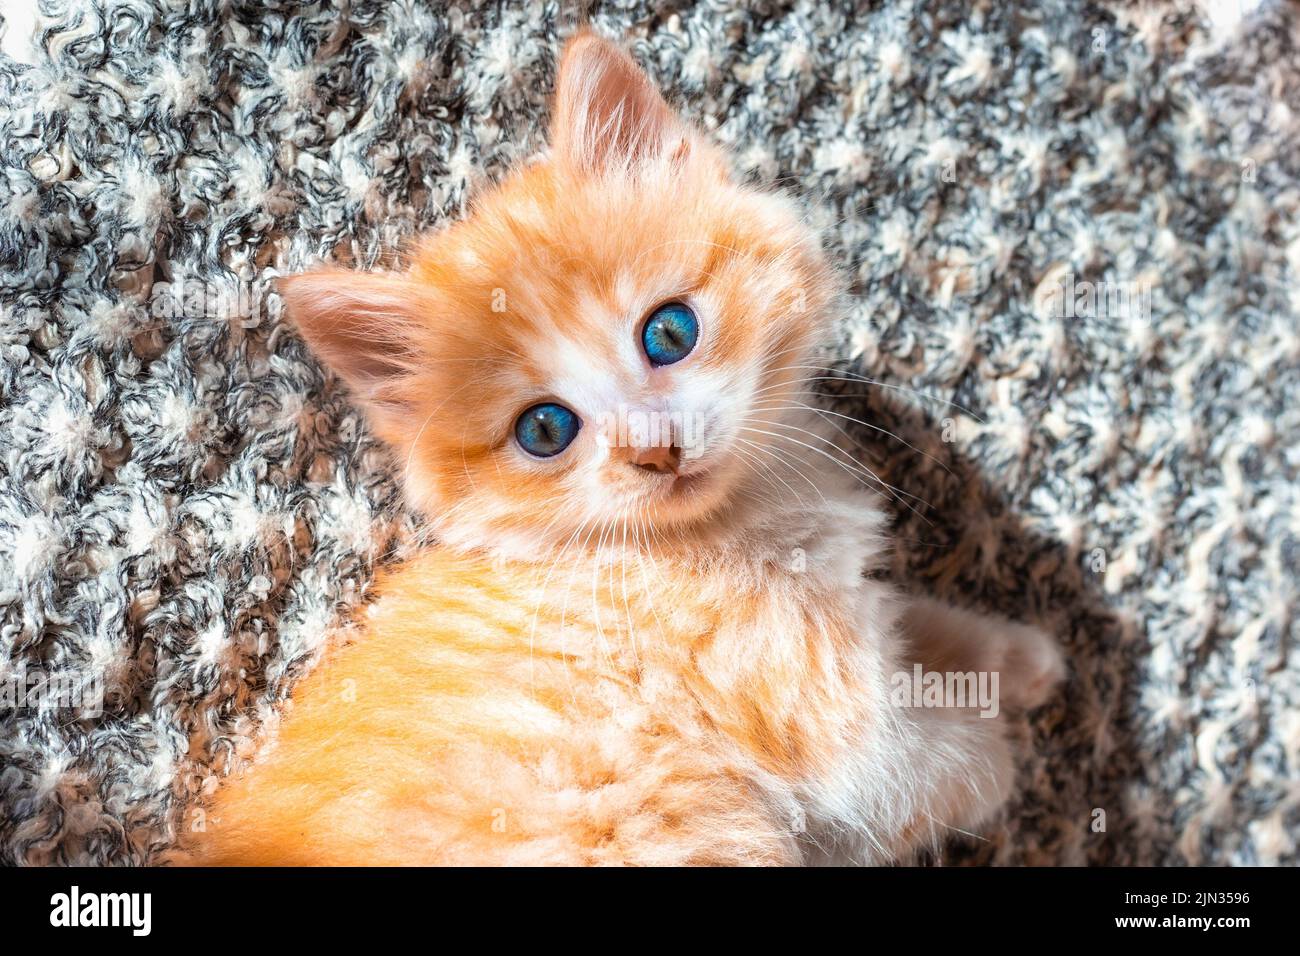 Ein kleines rotes Kätzchen mit blauen Augen sieht neugierig aus. Niedliches Haustier. Stockfoto